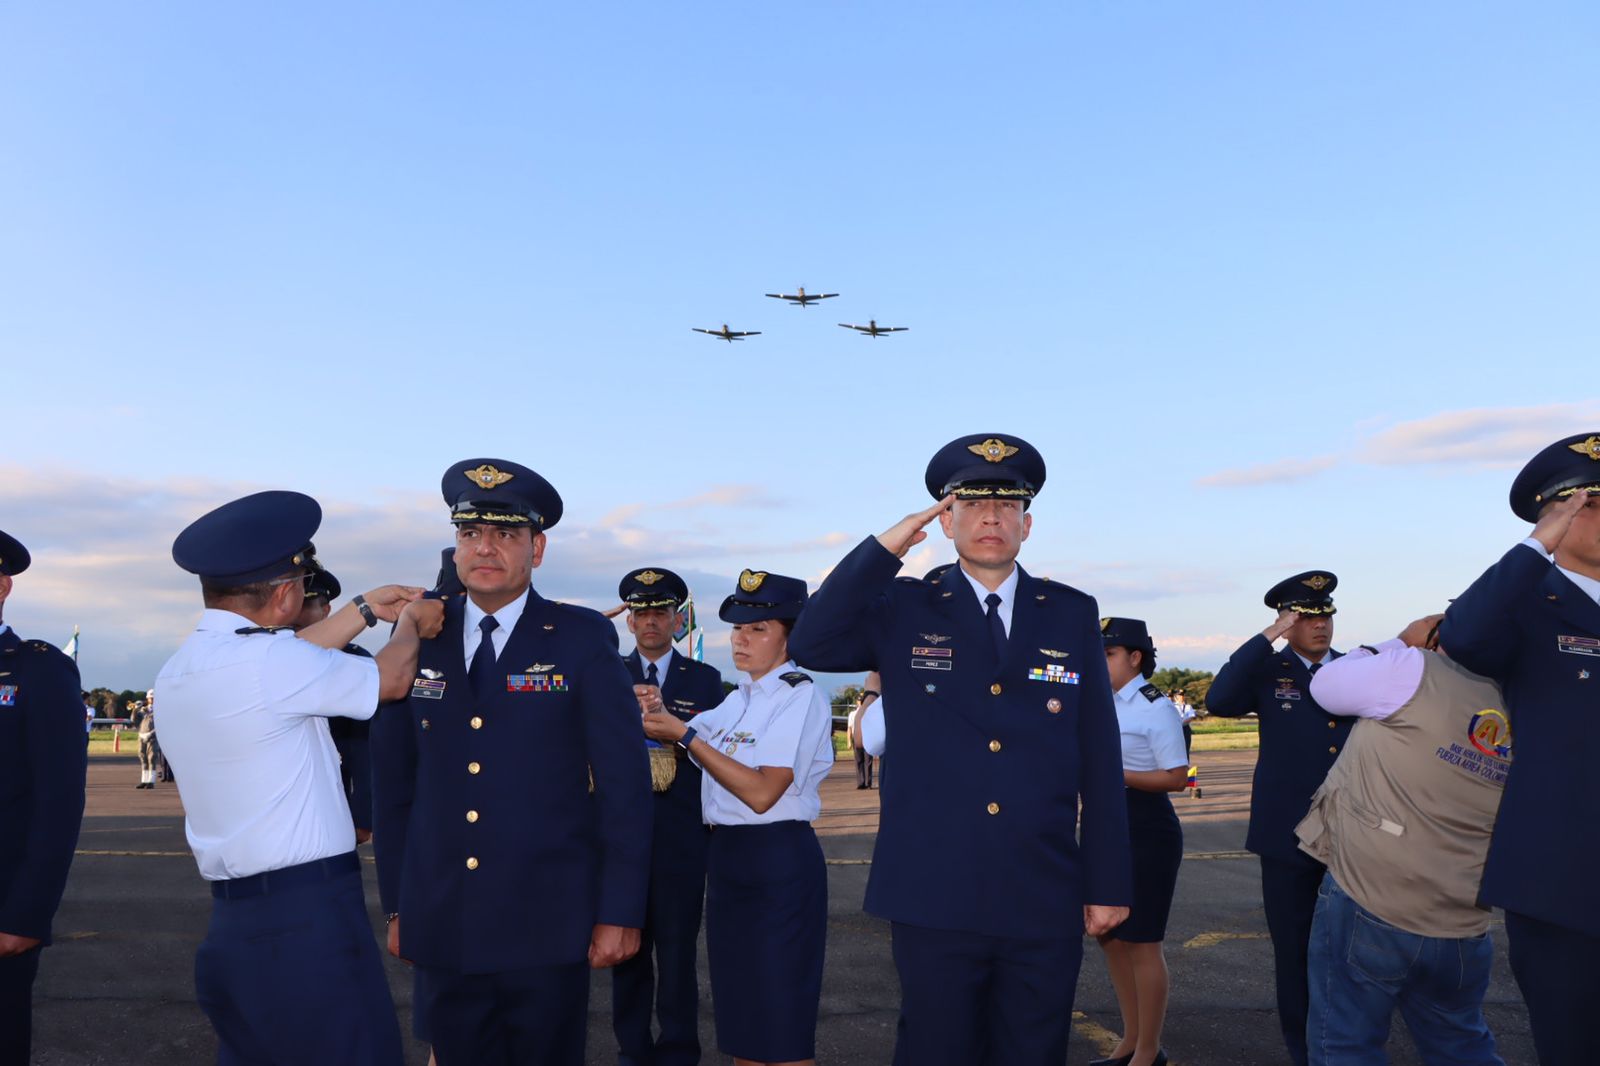 Oficiales de su Fuerza Aérea que protegen el suroriente colombiano fueron ascendidos en ceremonia militar